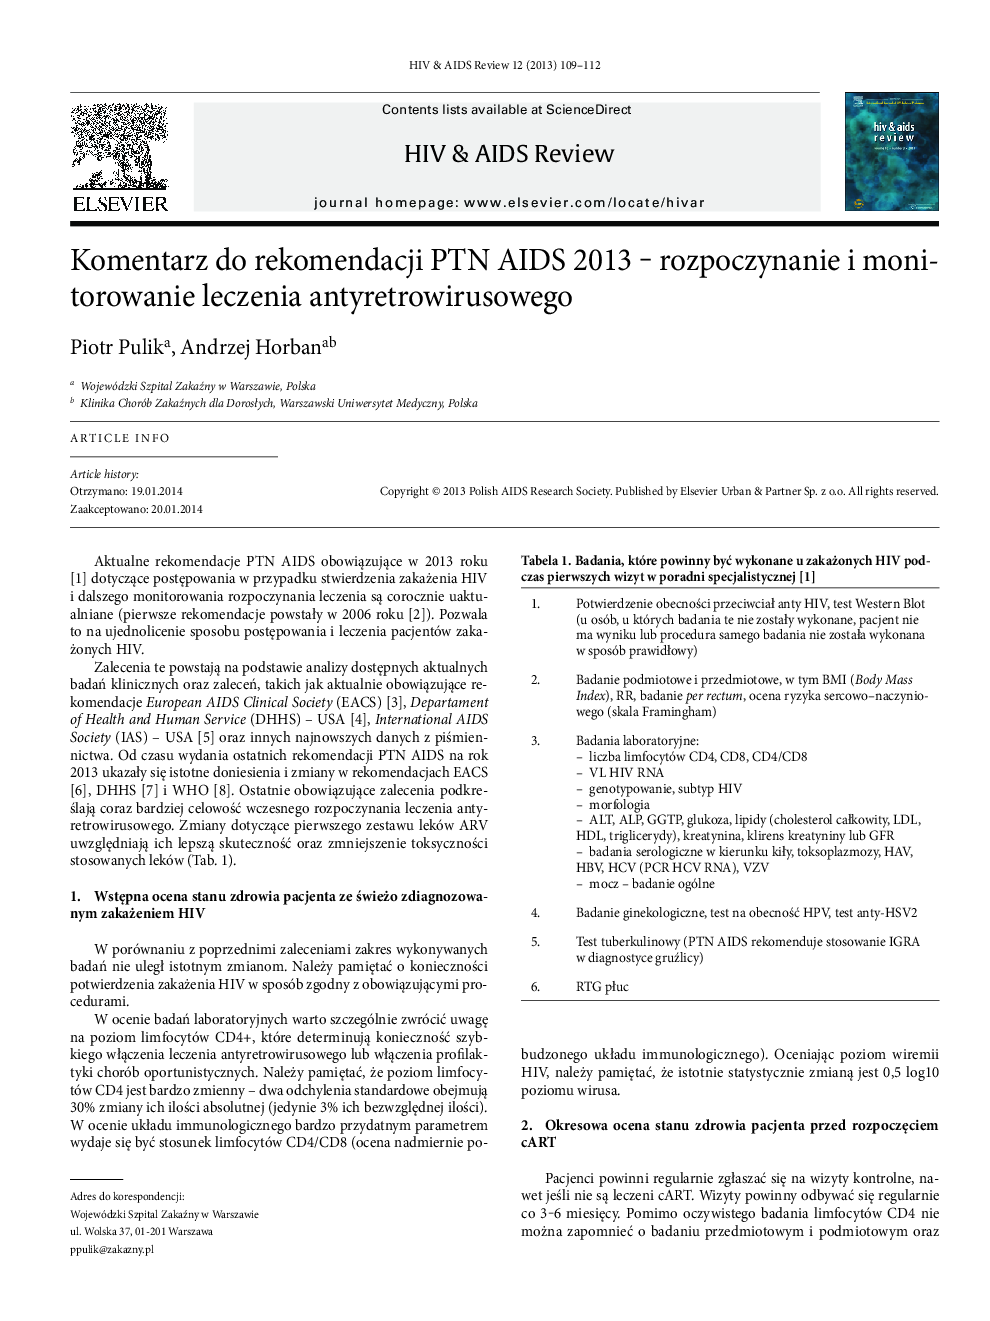 Komentarz do rekomendacji PTN AIDS 2013 - rozpoczynanie i monitorowanie leczenia antyretrowirusowego